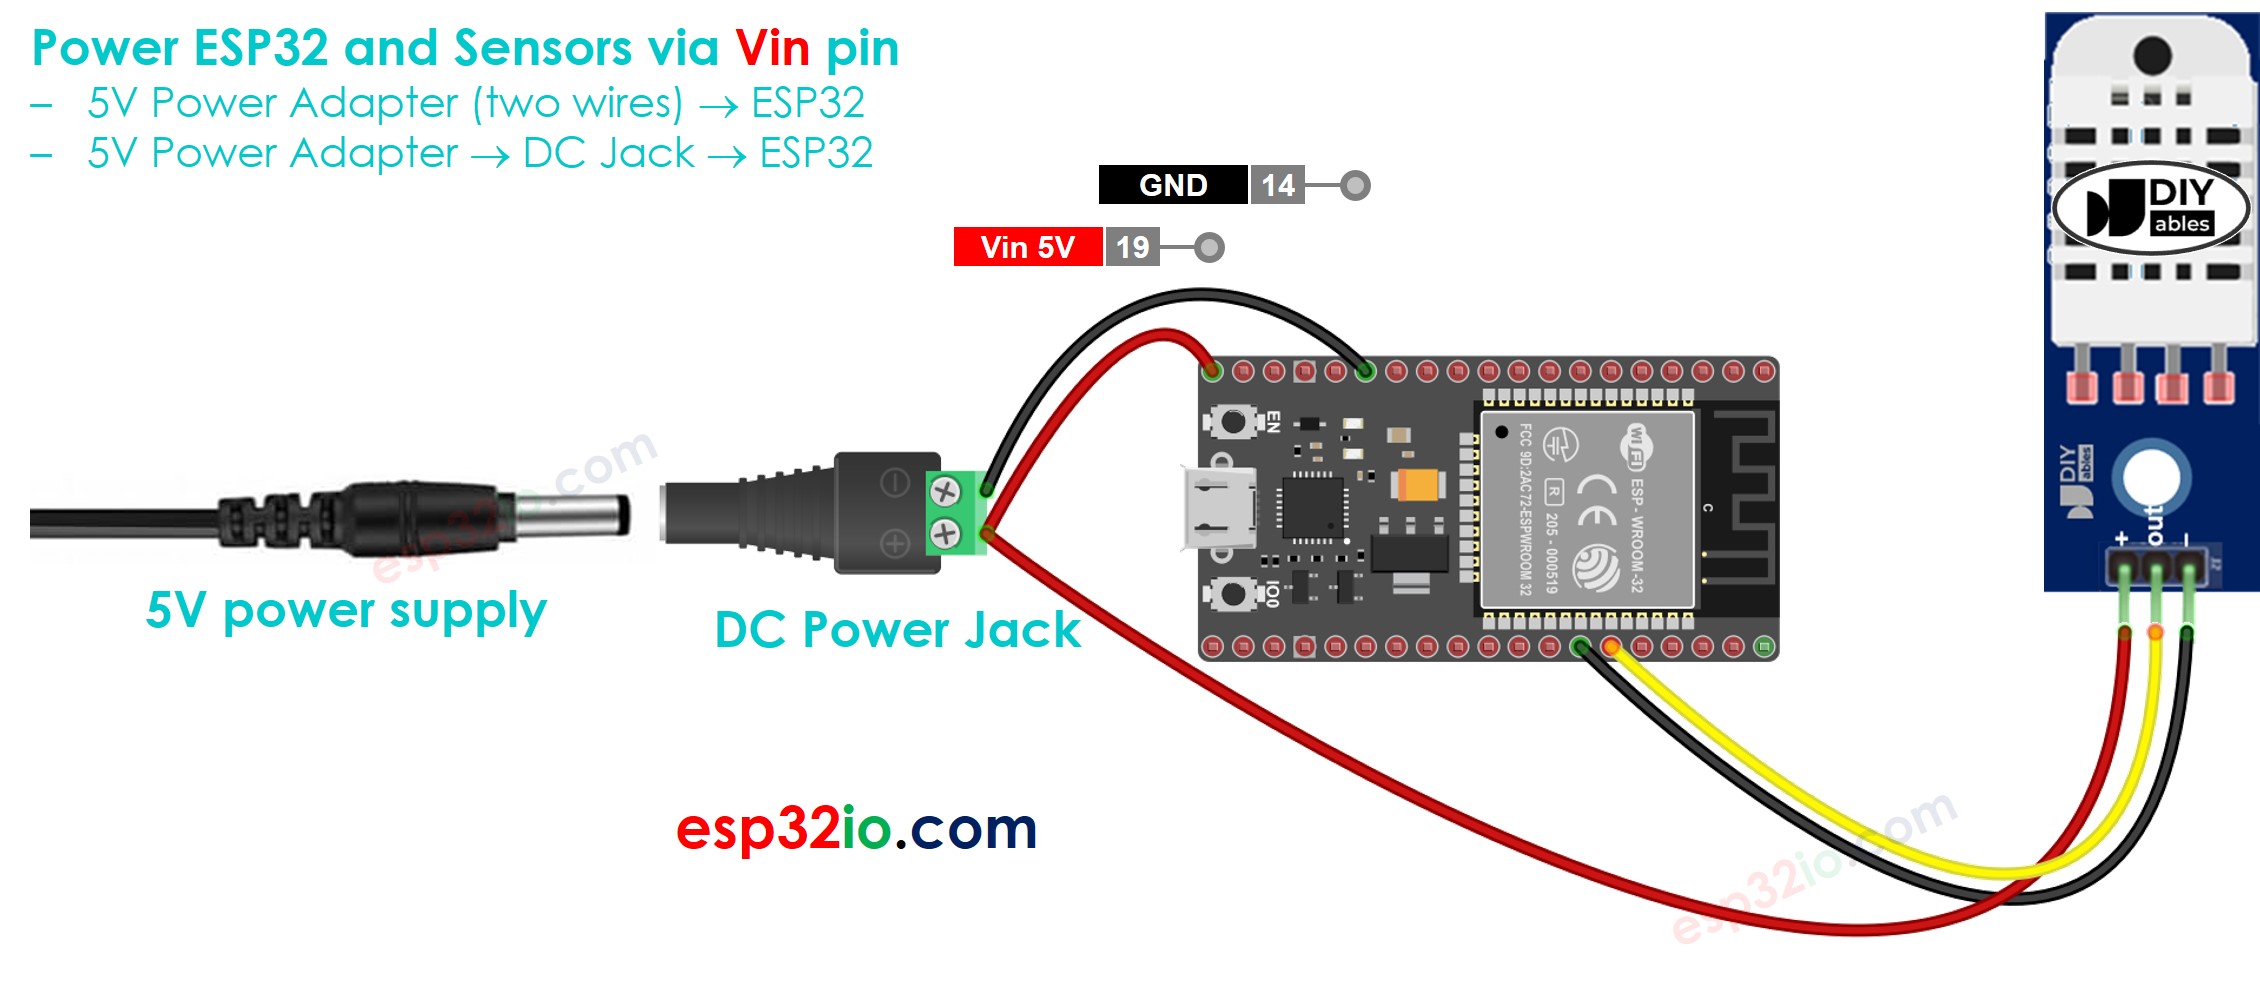 how to power ESP32 and sensors via Vin pin